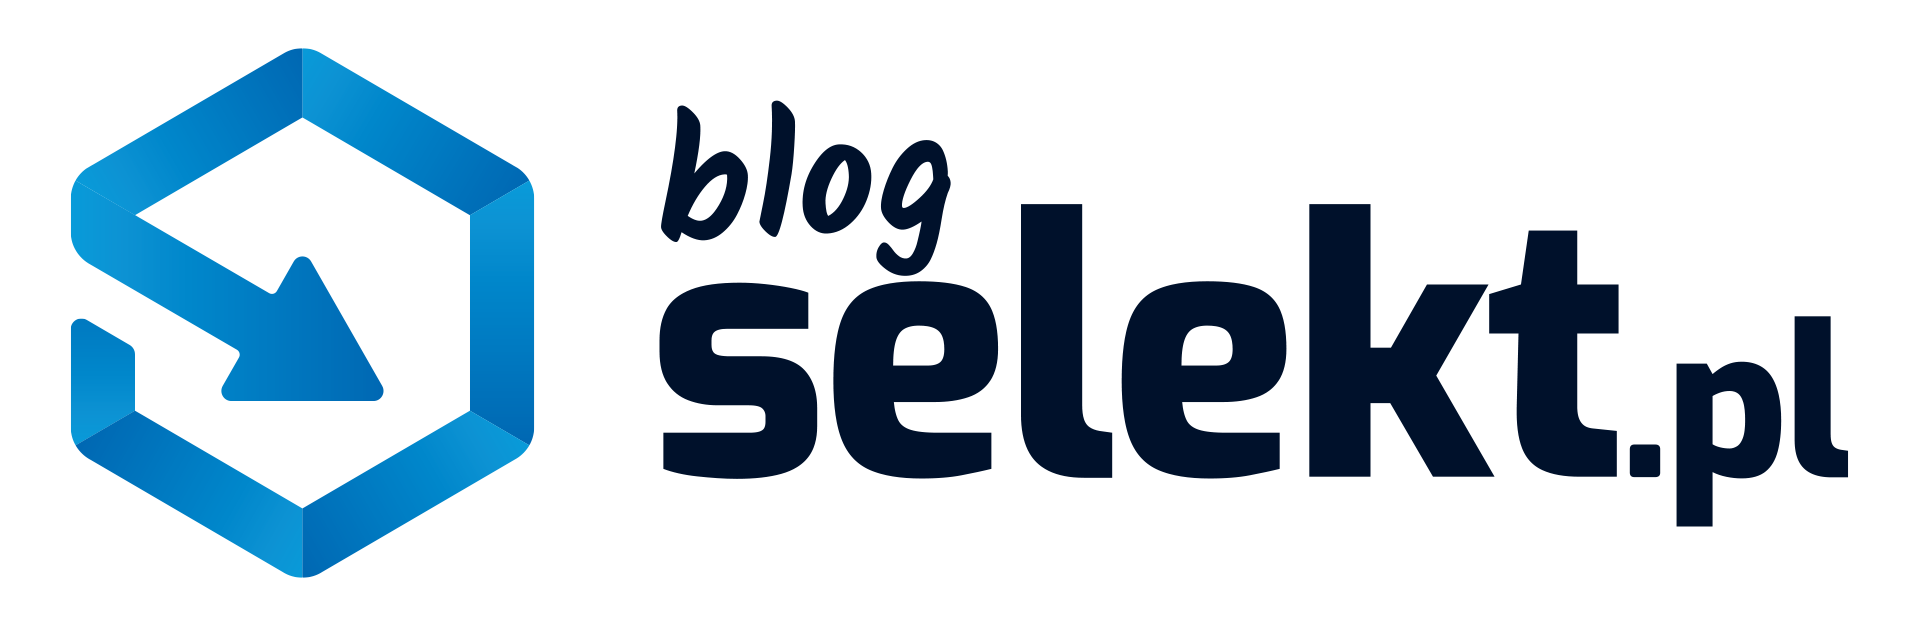 SELEKT.pl Blog